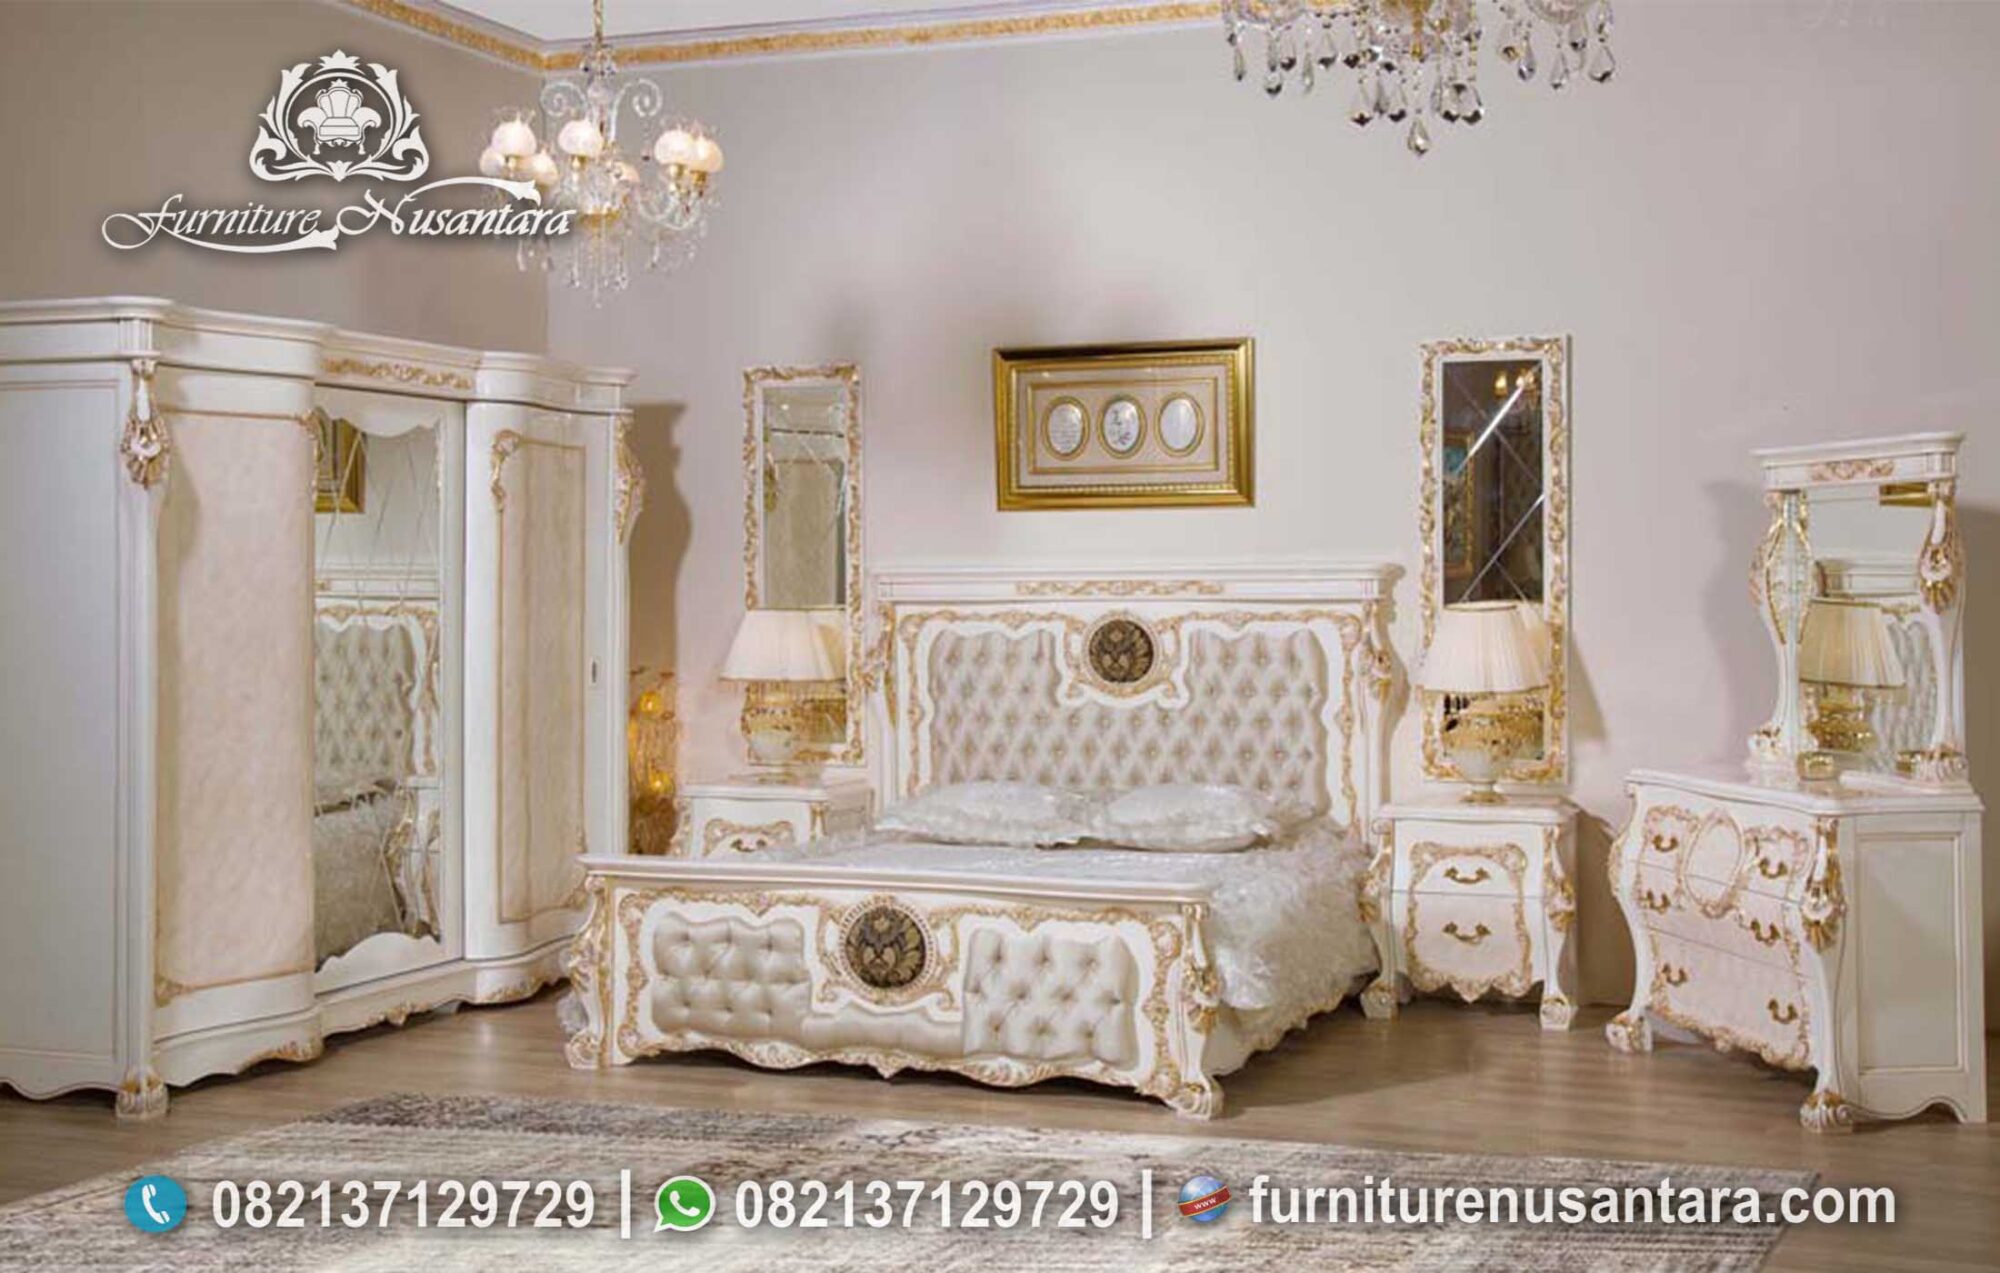 Jual Set Kamar Tidur Klasik Mewah KS-193, Furniture Nusantara